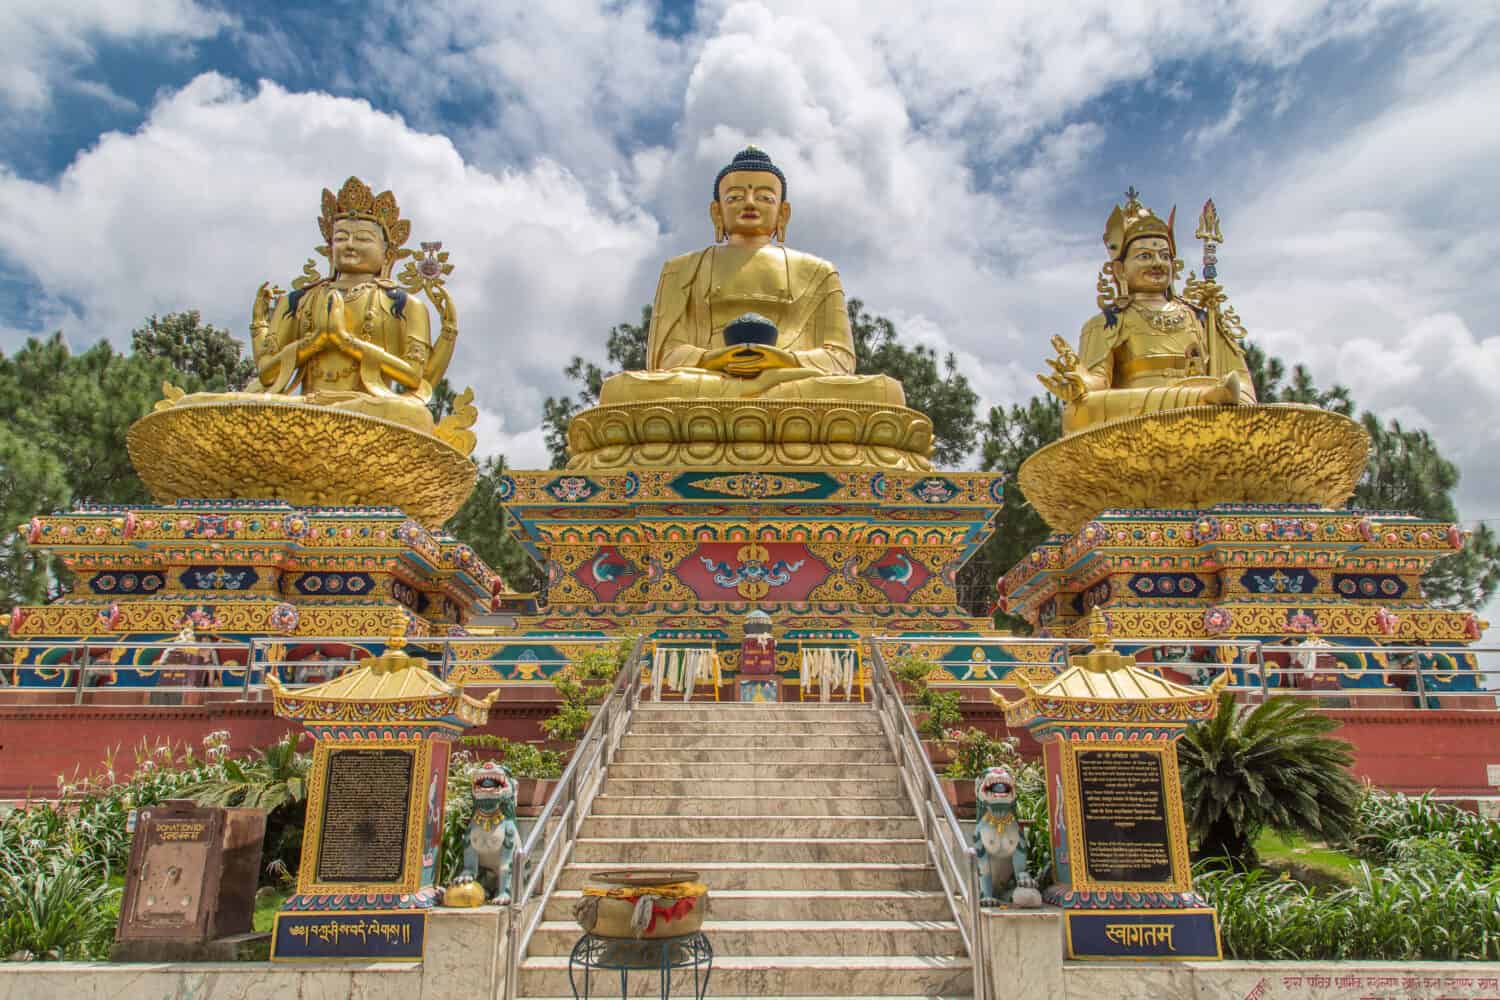 Big golden statues of Avalokiteshvara, Buddha Shakyamuni and Padmasambhava on lotus thrones in Buddha park, Swayambhunath area, Kathmandu, Nepal